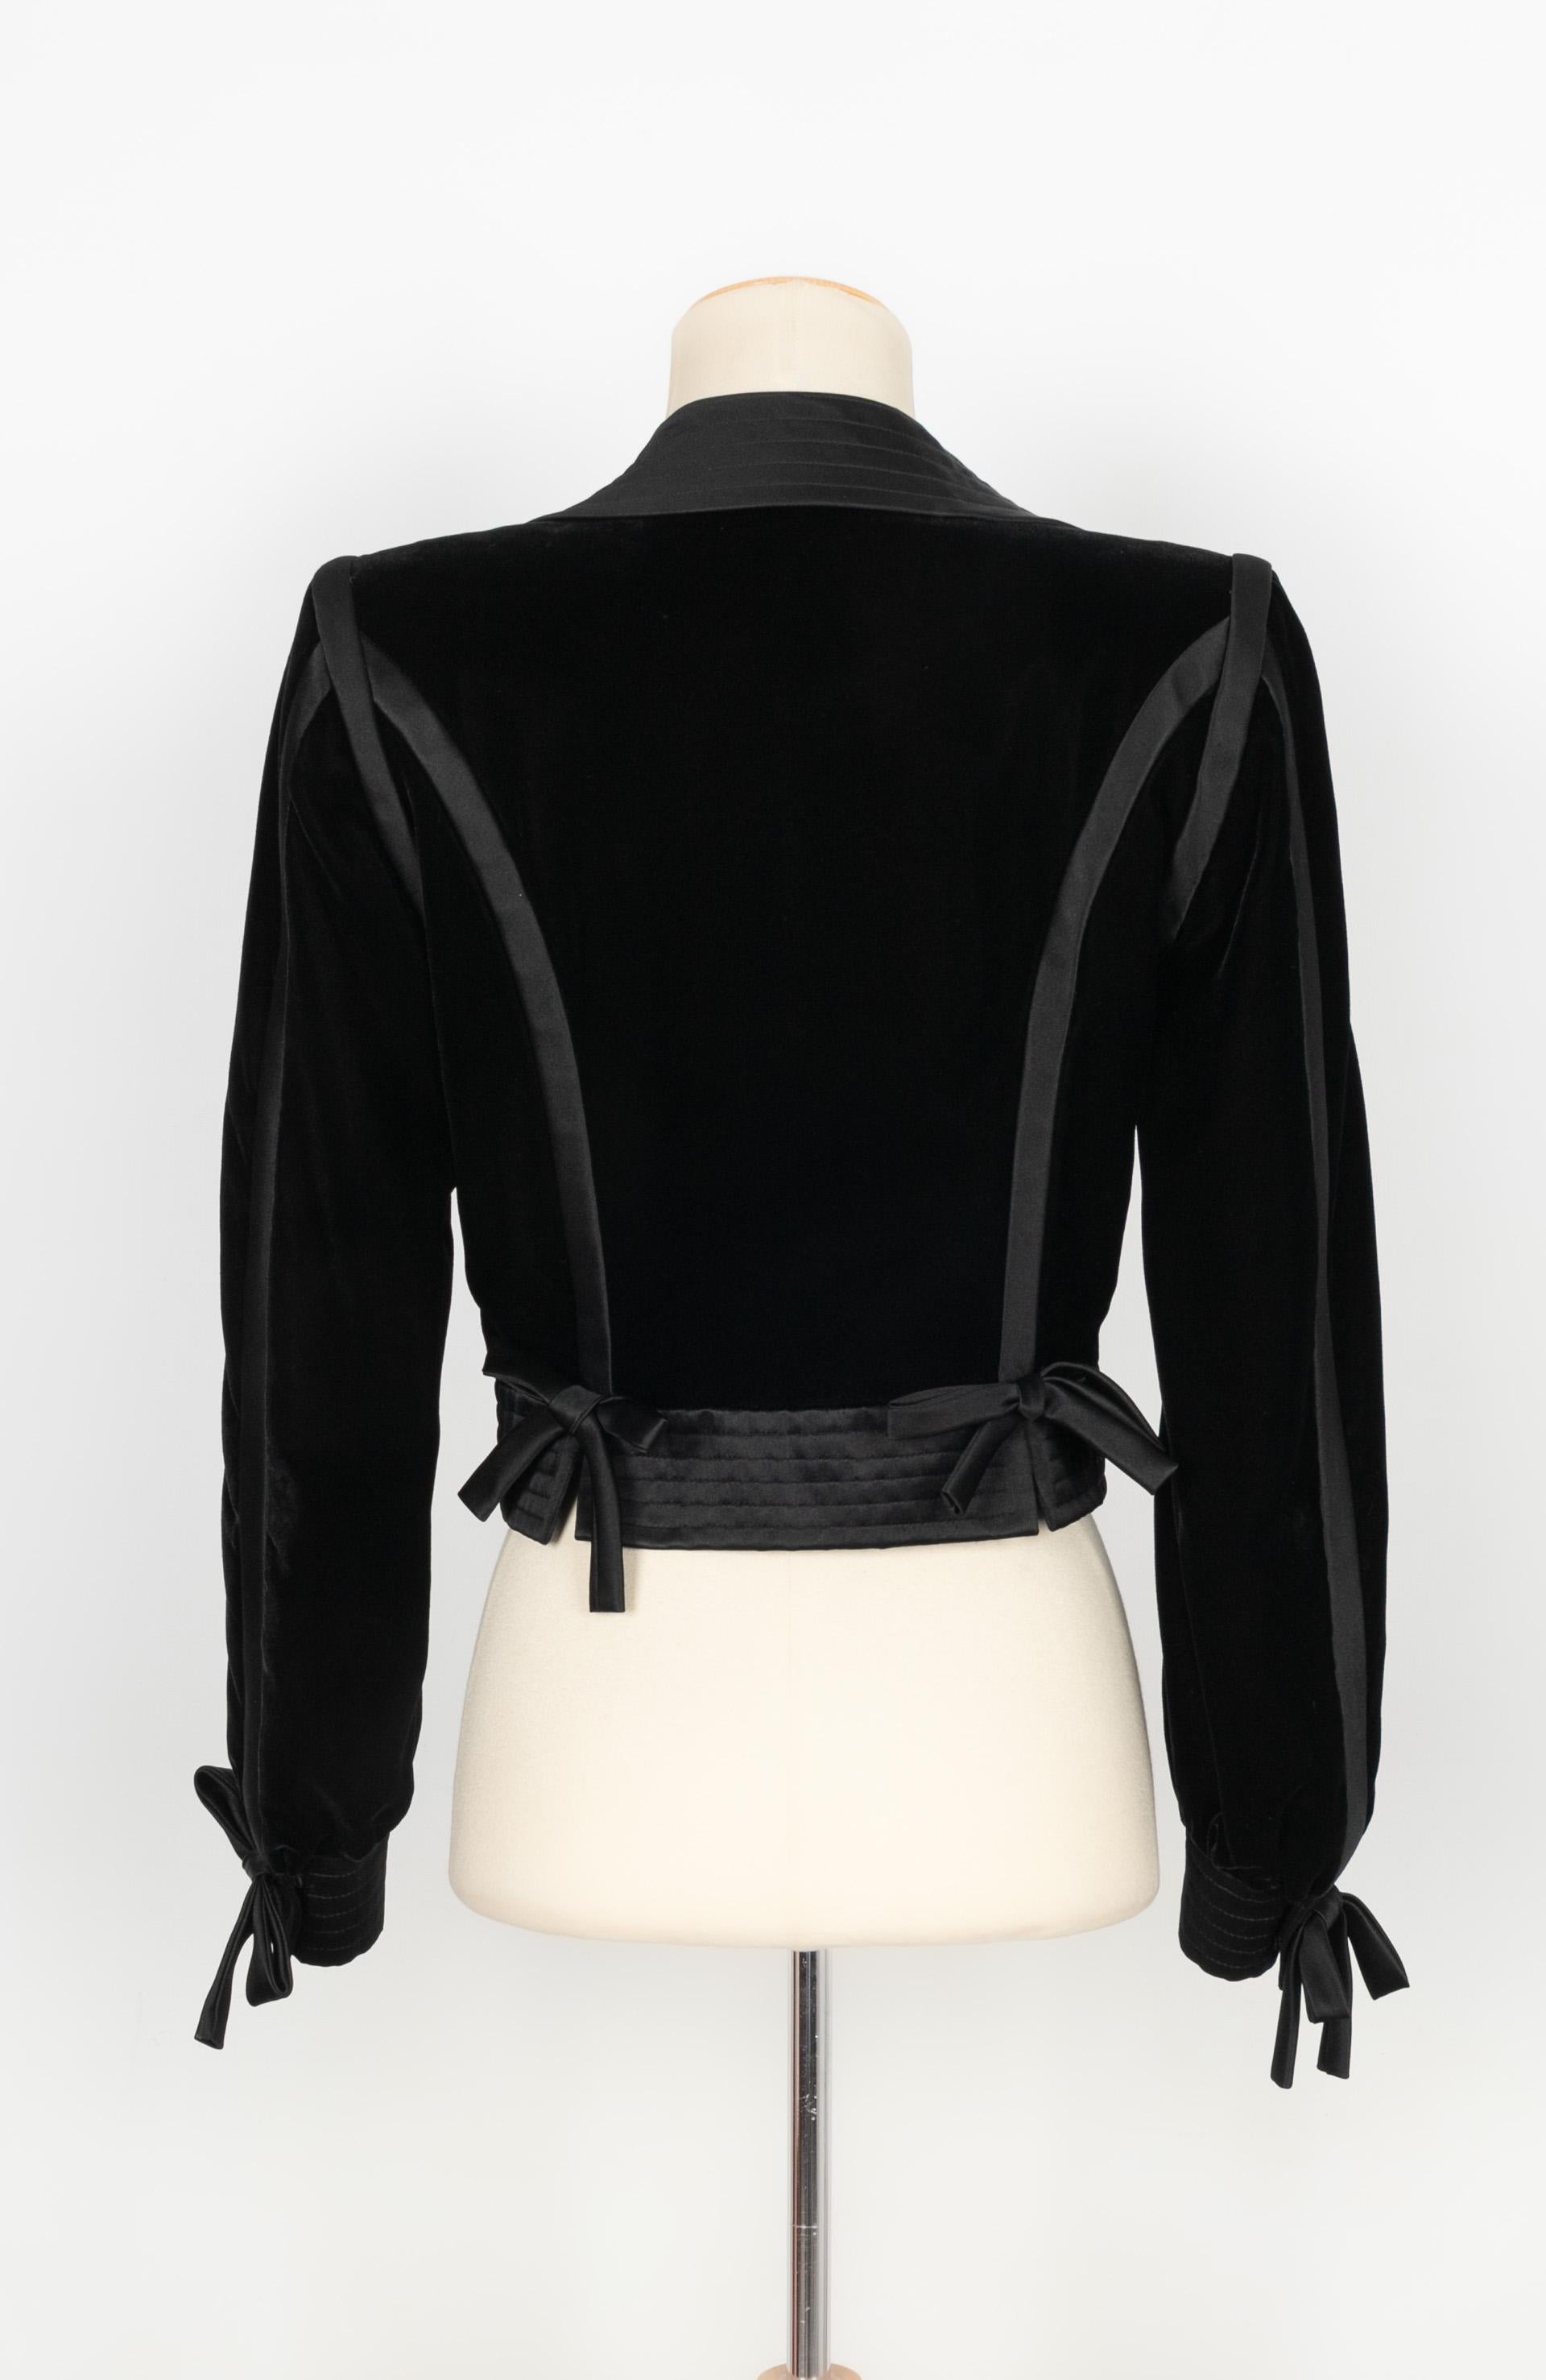 Black Christian Lacroix Jacket Haute Couture For Sale